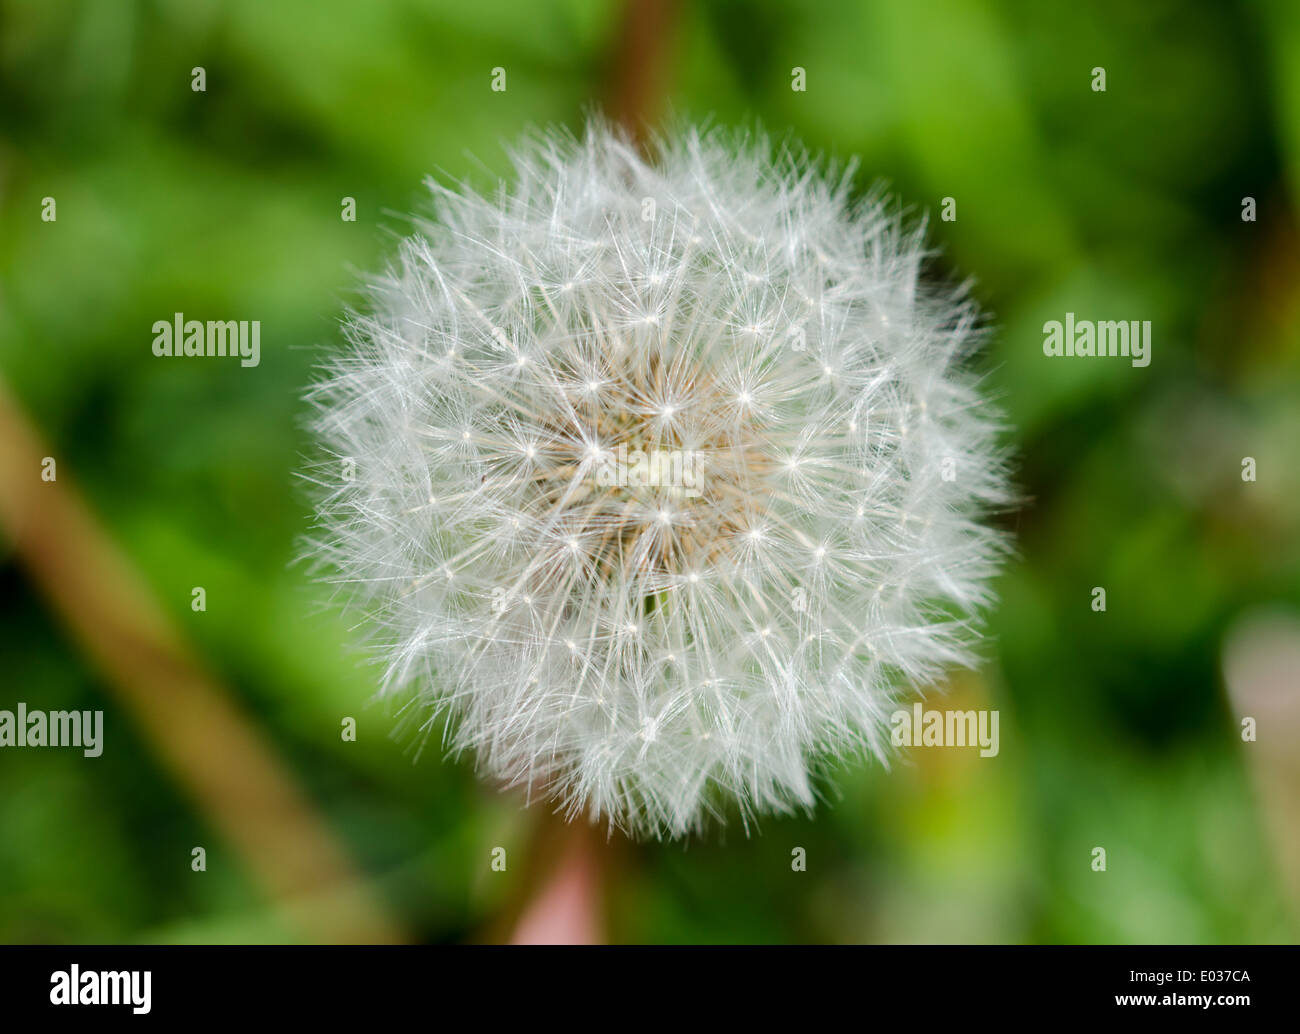 Nahaufnahme von einem weissen Samen Kopf oder "clock" von einer einzigen Löwenzahn (Taraxacum) Pflanze im Frühjahr in West Sussex, England, UK. Stockfoto